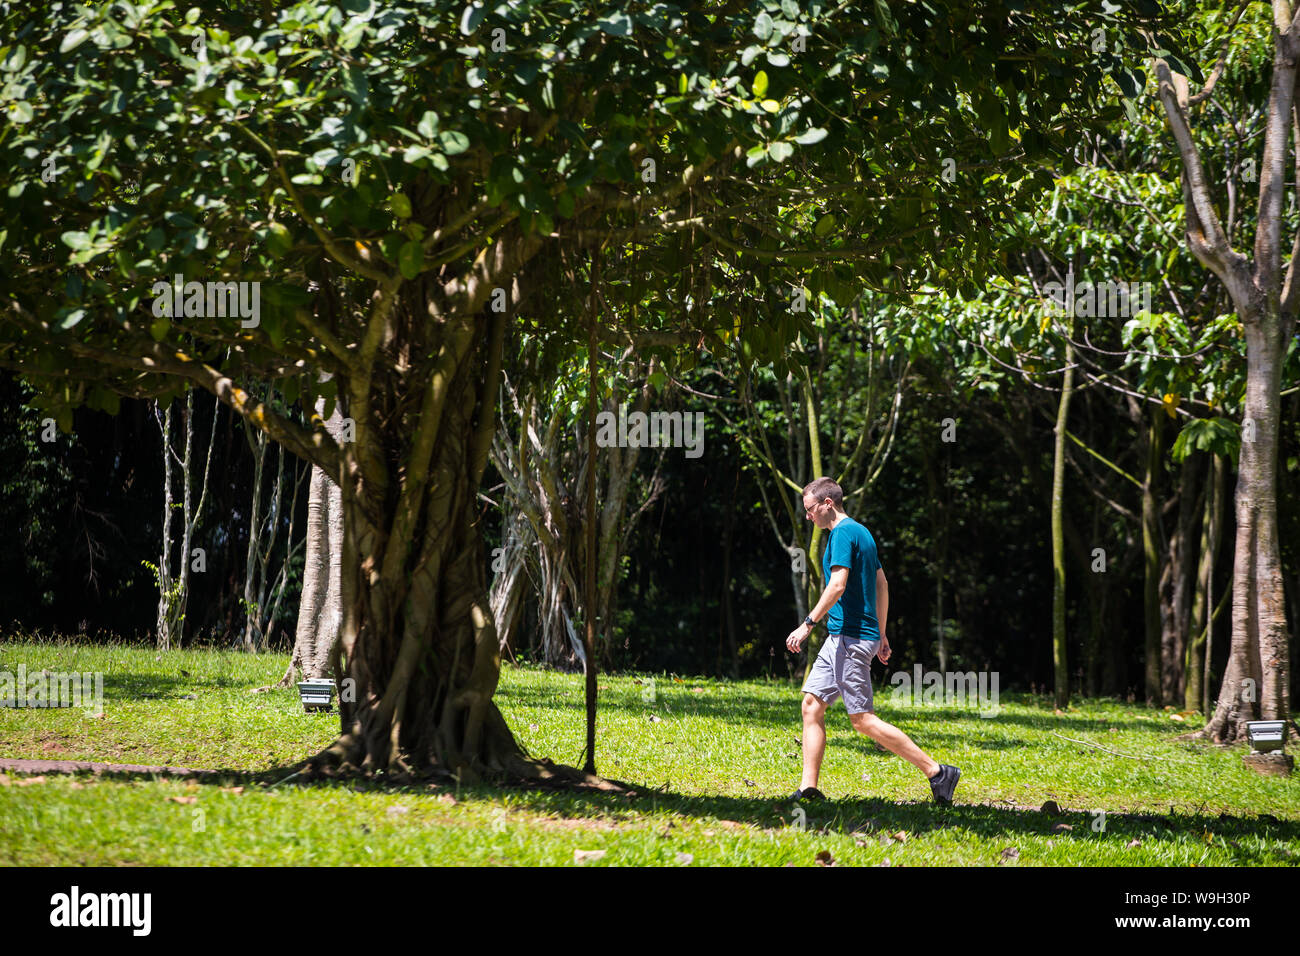 Un uomo in camicia blu che fa una passeggiata nel parco, camminare può aiutare a rilasciare endorfine. Singapore. Foto Stock